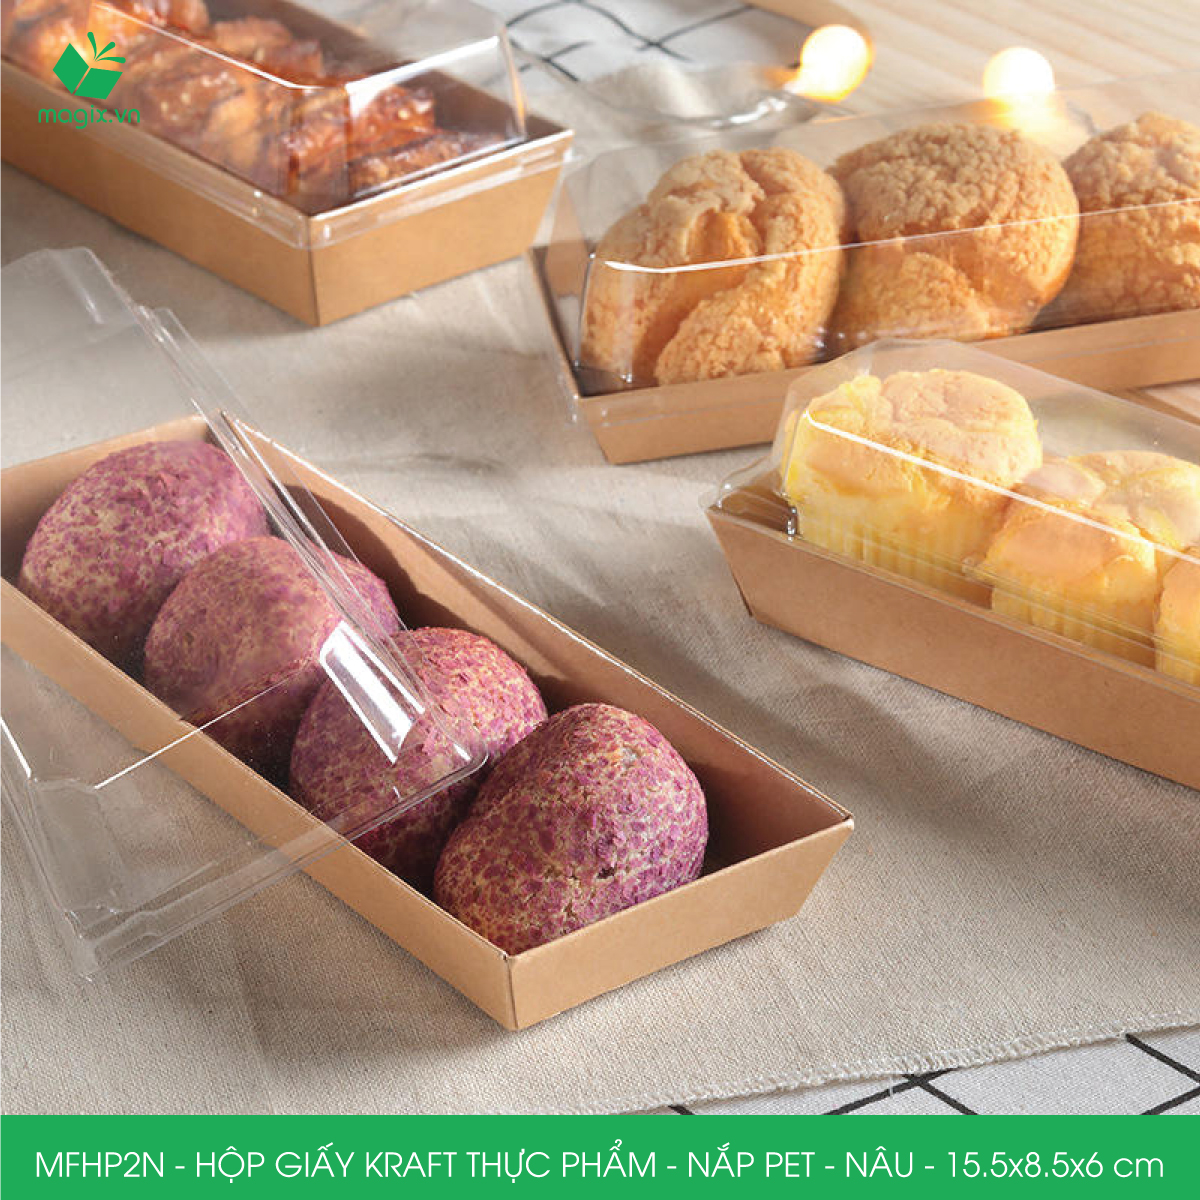 MFHP2N - 15.5x8.5x6 cm - 25 hộp giấy kraft thực phẩm màu nâu nắp Pet, hộp giấy chữ nhật đựng thức ăn, hộp bánh nắp trong